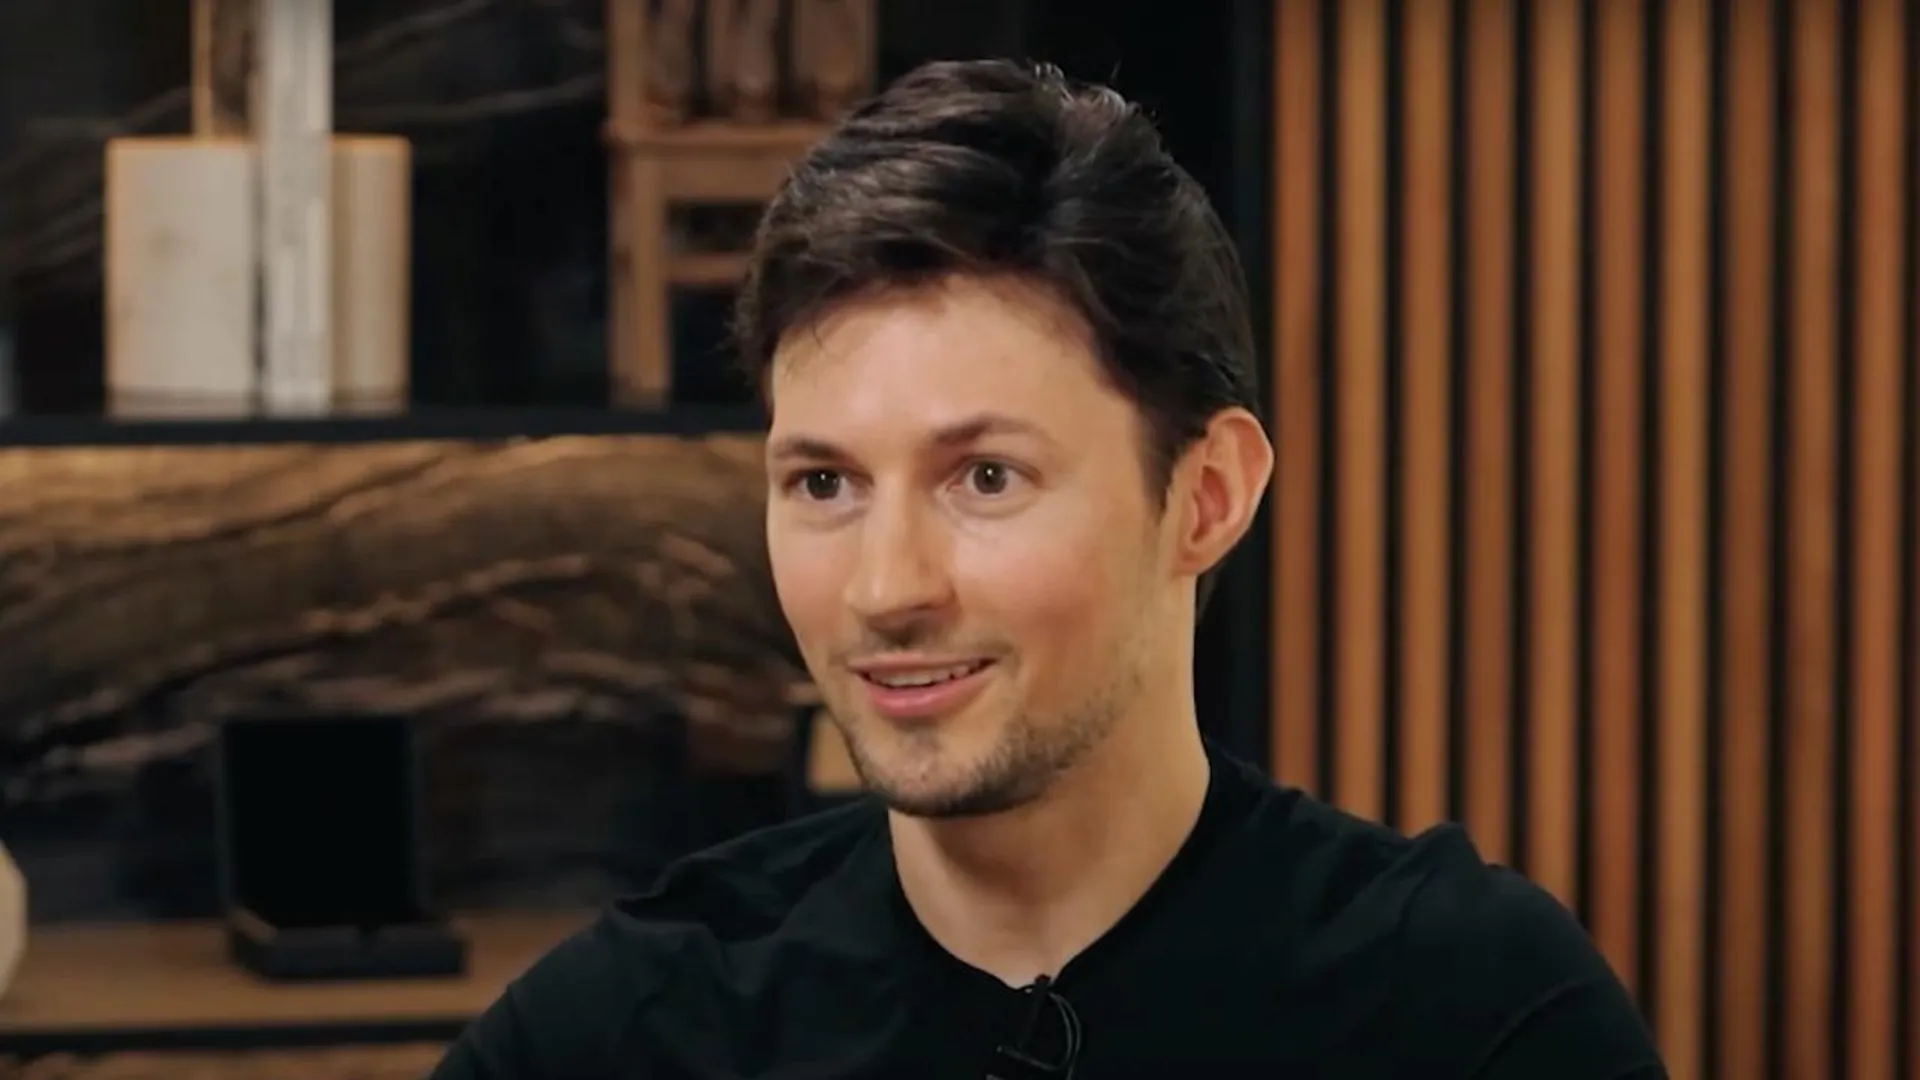 Америку пора спасать: политолог обнаружил важное послание в интервью Дурова